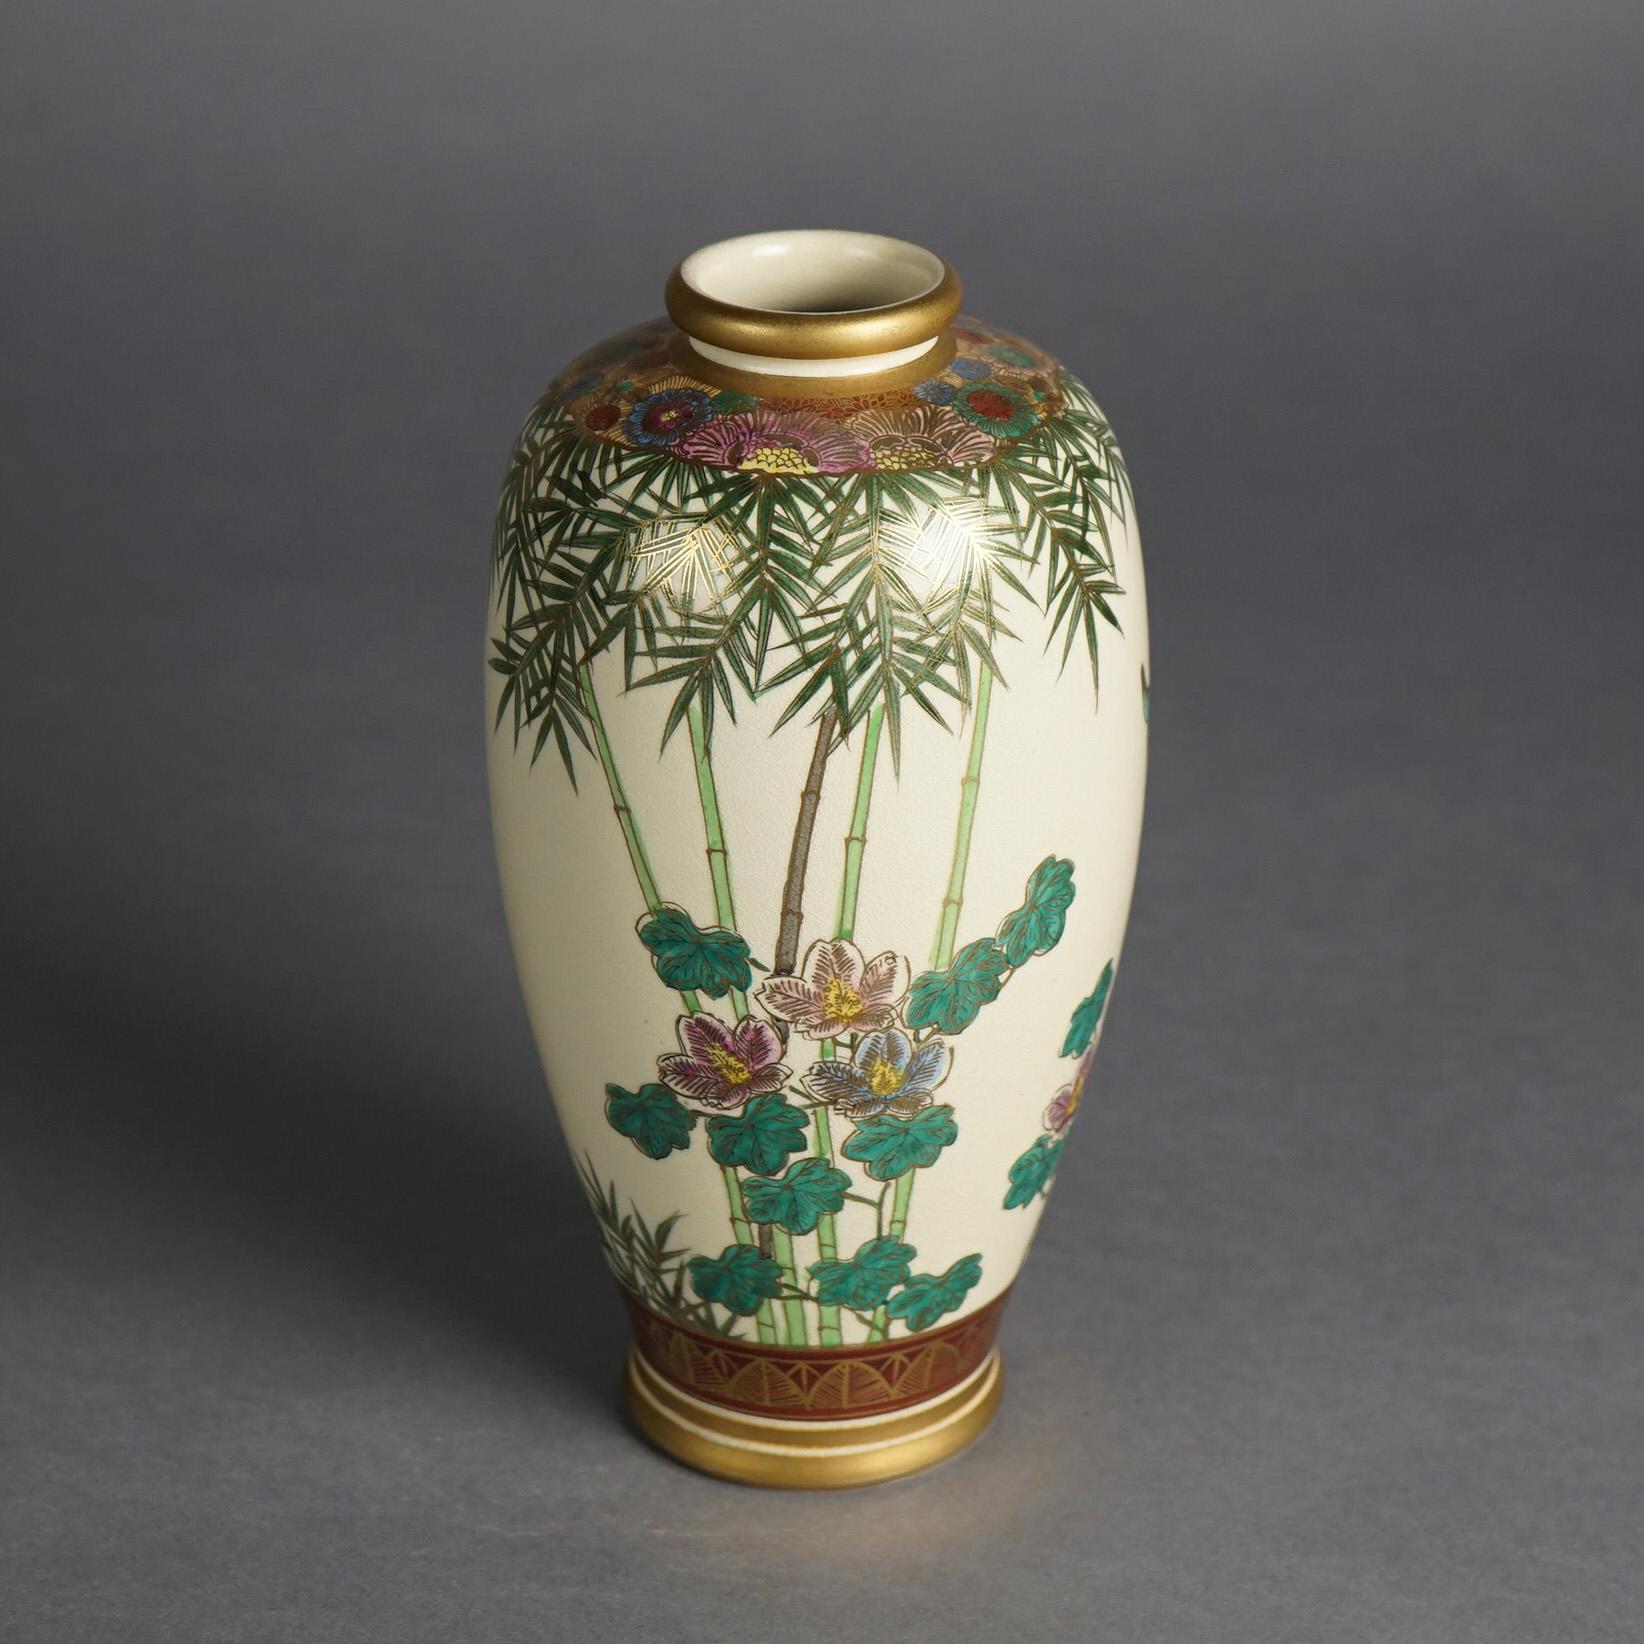 Antike japanische Meiji Satsuma Hand gemalt & vergoldet Porzellan Vase mit Blumen, Schmetterling & Bambus, C1910

Maße: 8,75''H x 4,5''B x 4,5''D